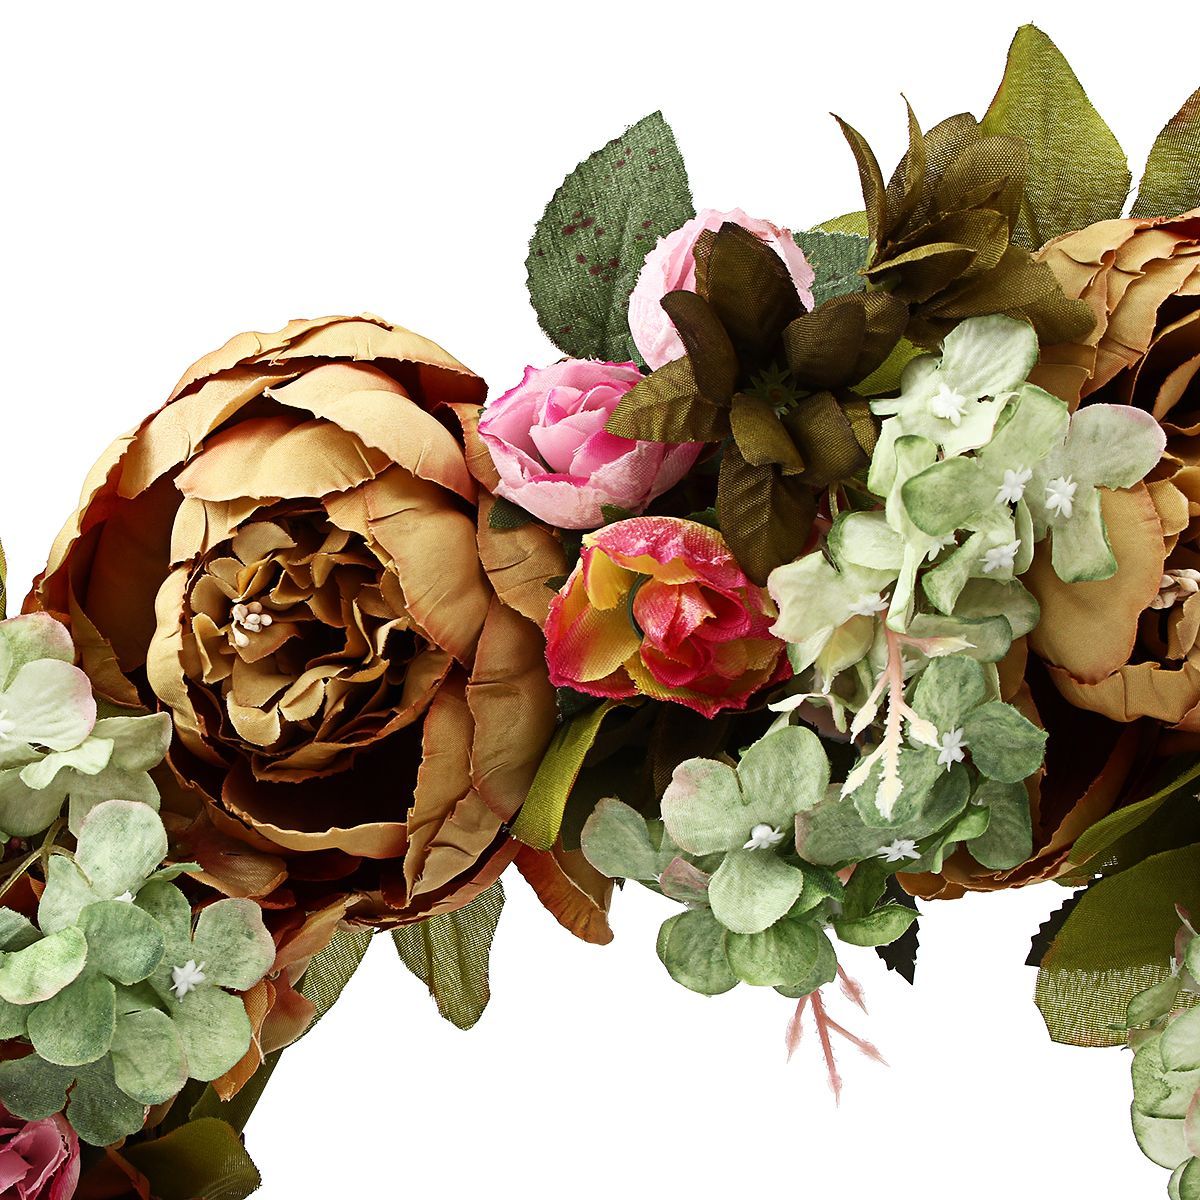 Artificial-Flowers-Garland-European-Lintel-Wall-Decorative-Flower-Door-Wreath-for-Wedding-Home-Chris-1528178